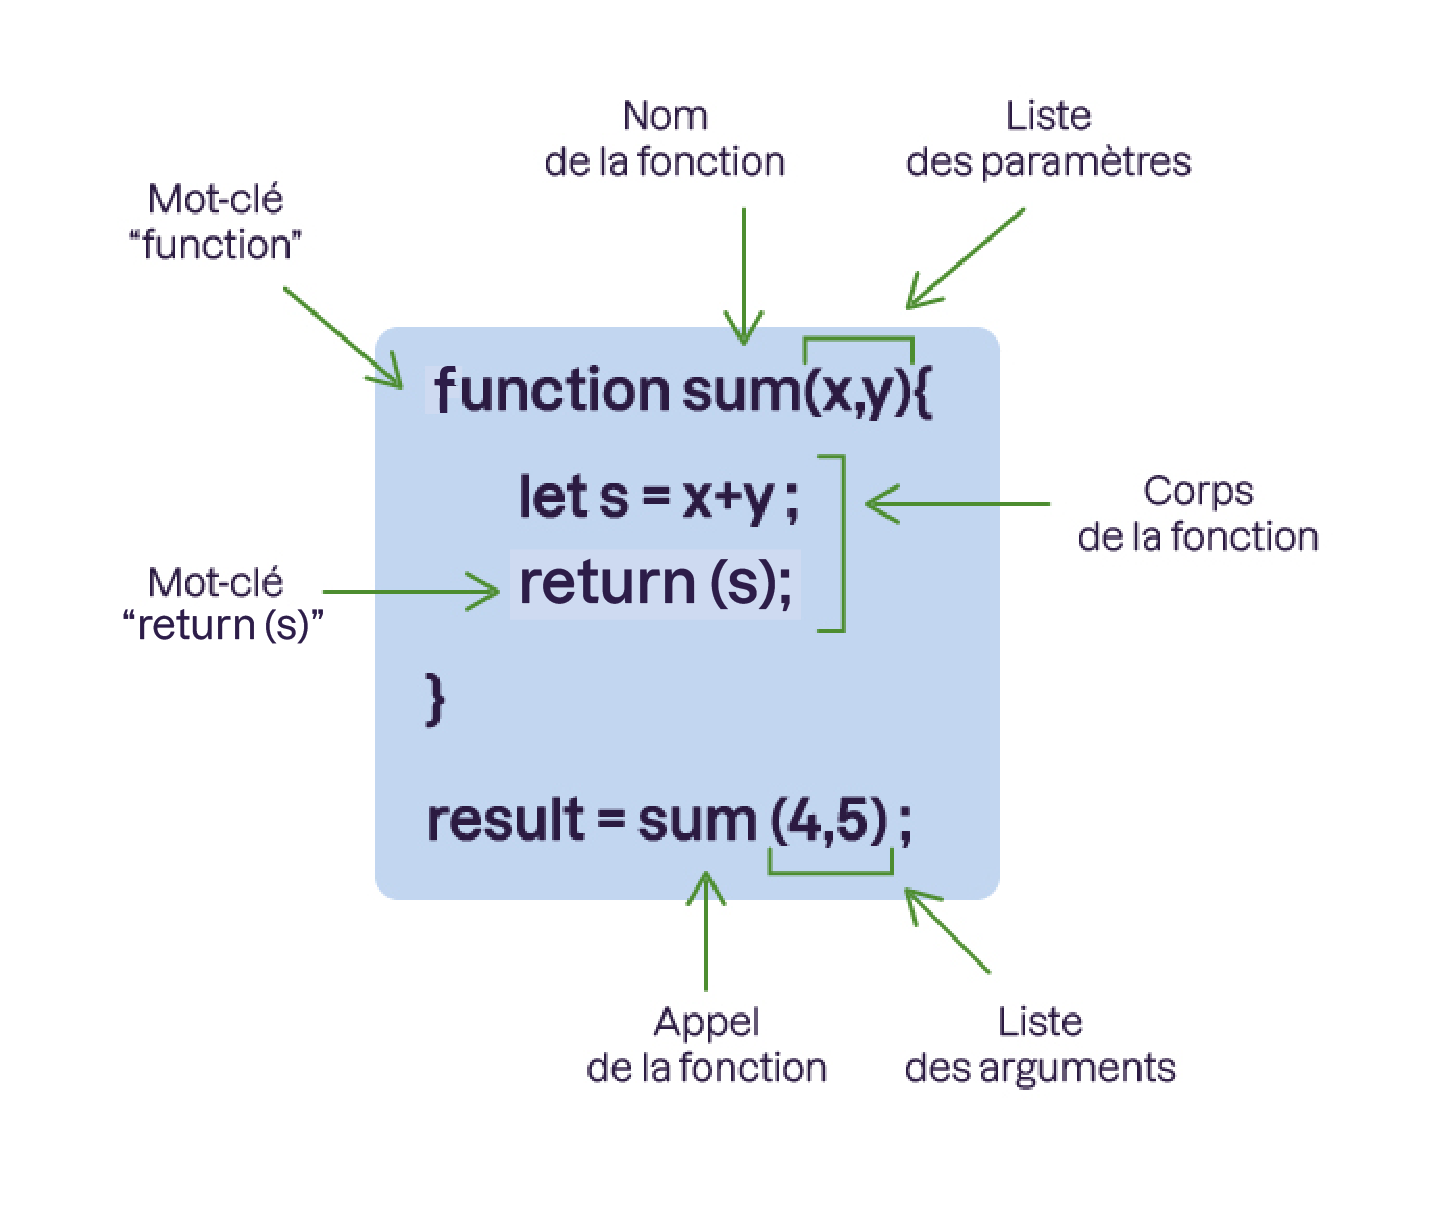 Nom de la fonction, Liste des paramètres, corps de la fonction, liste des arguments, appel de la fonction, mots-clés returns et function.